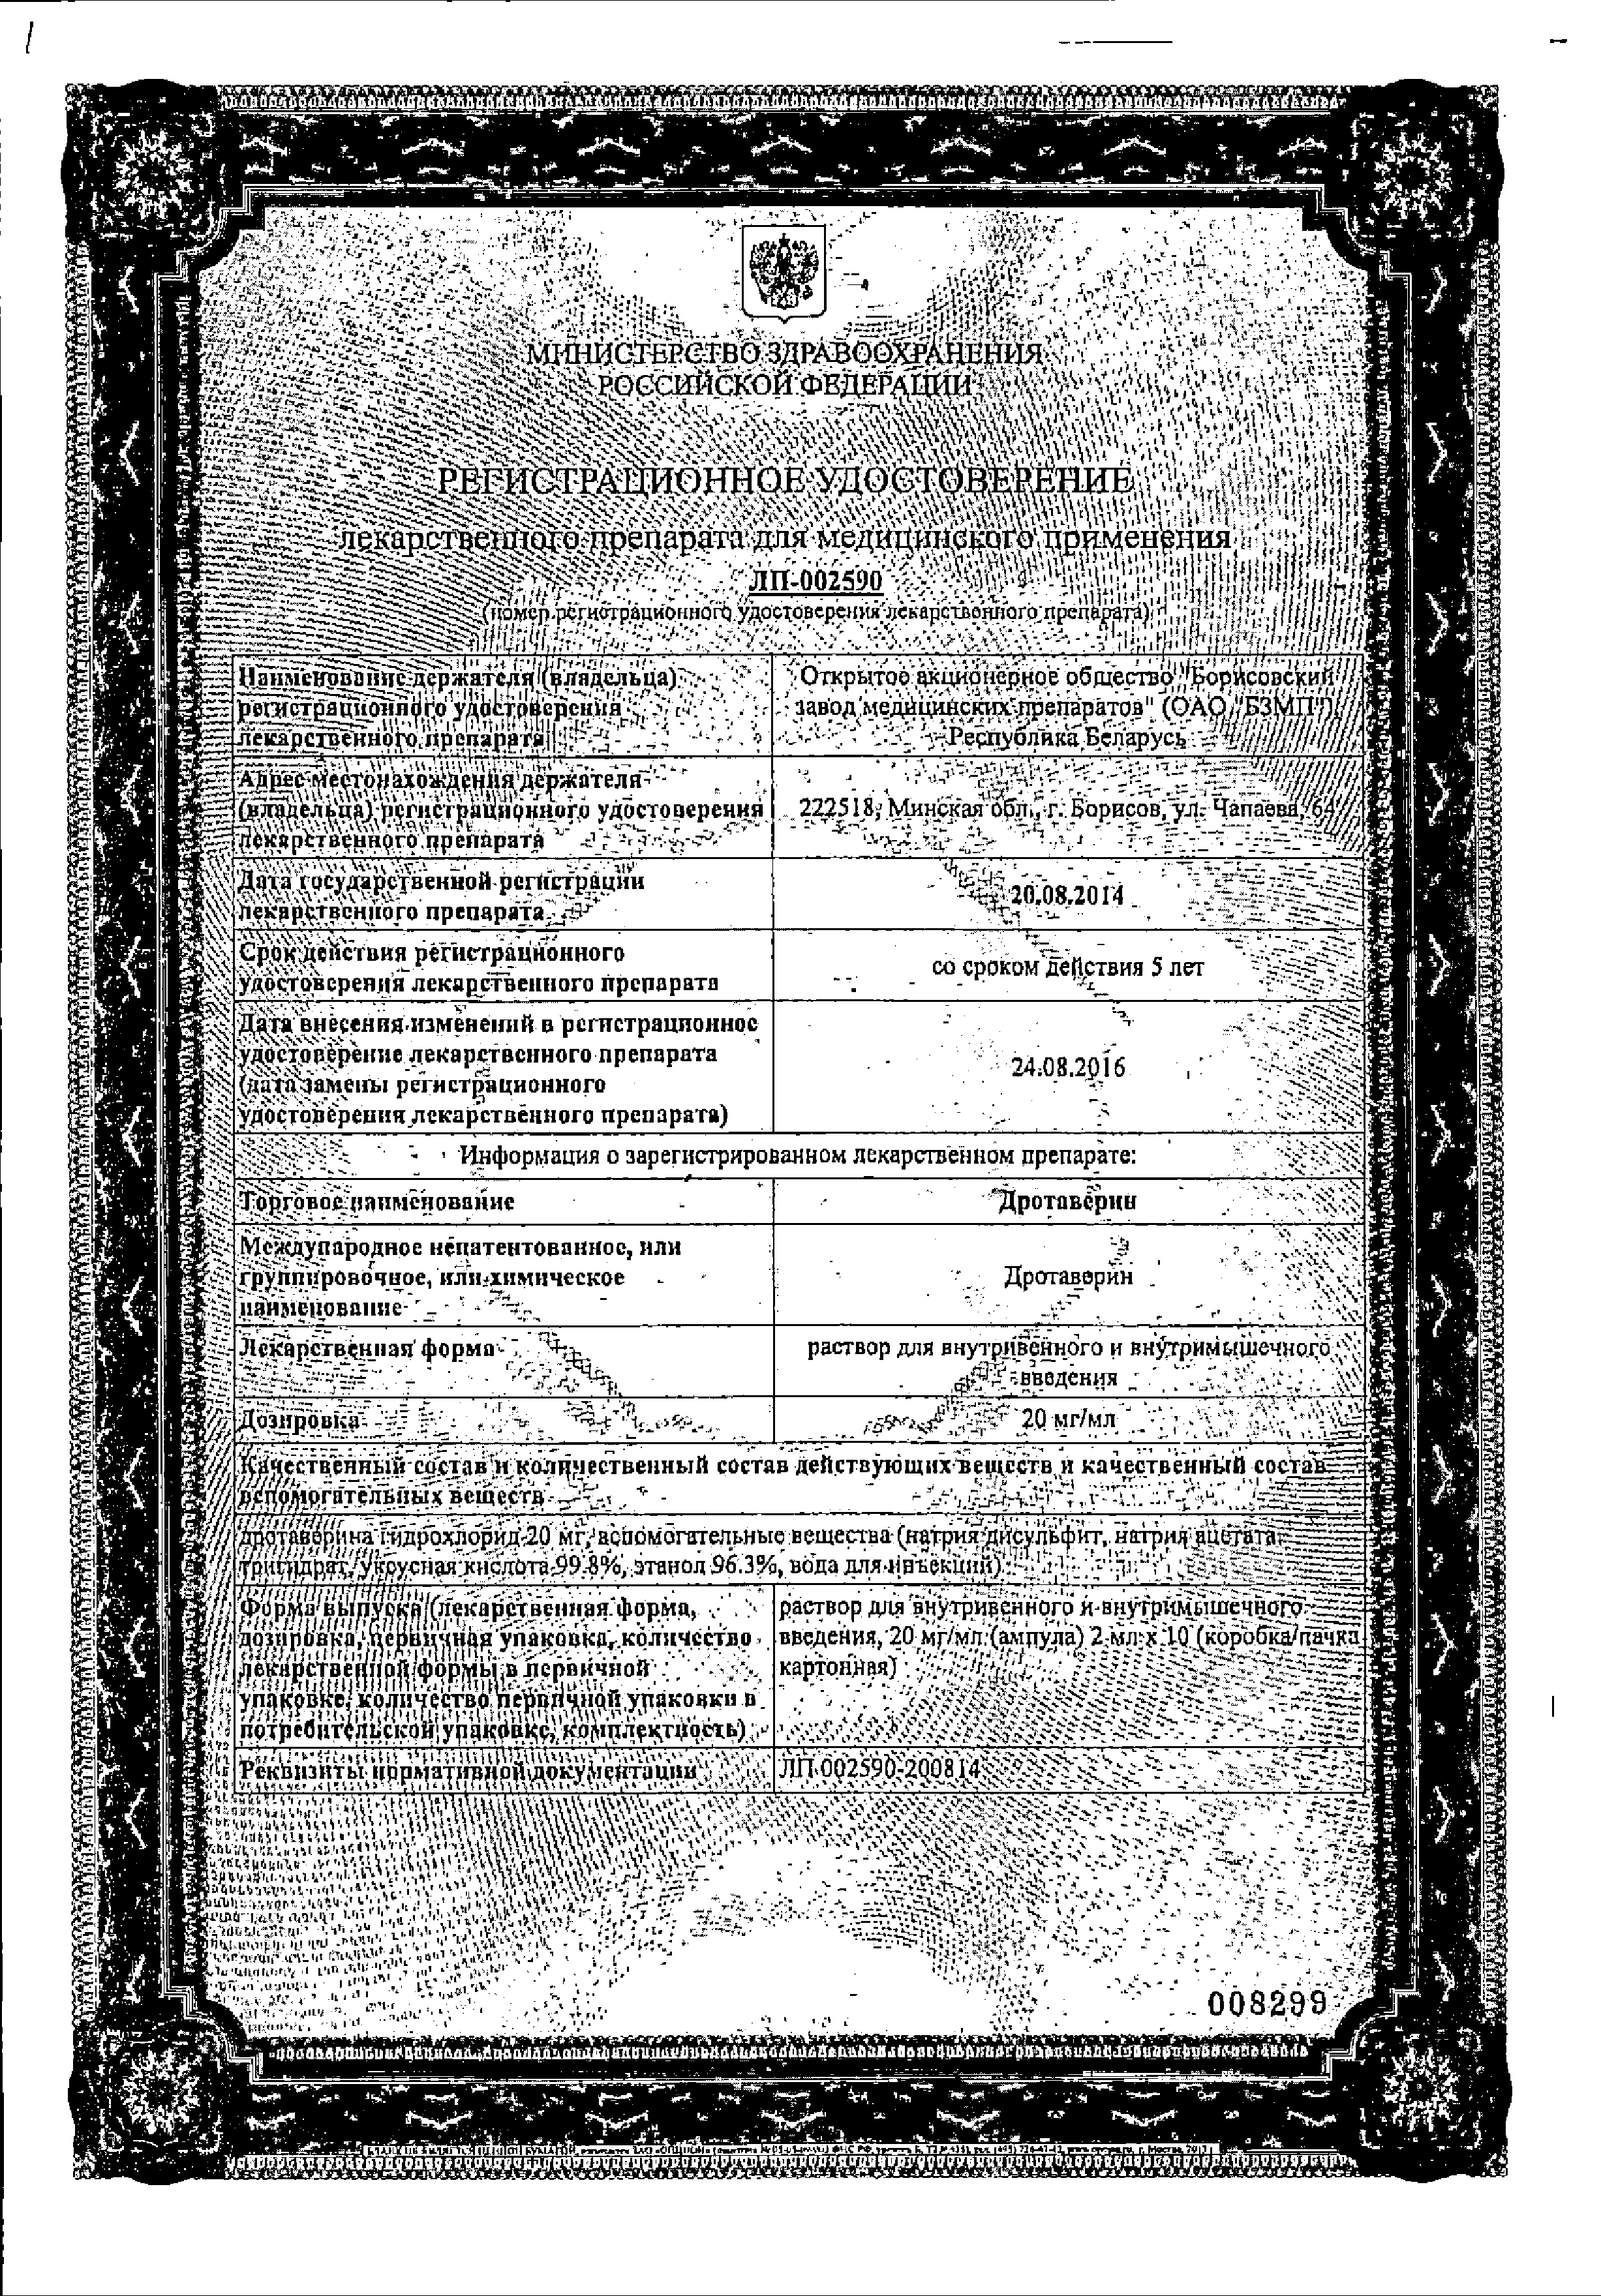 Дротаверин (для инъекций) сертификат